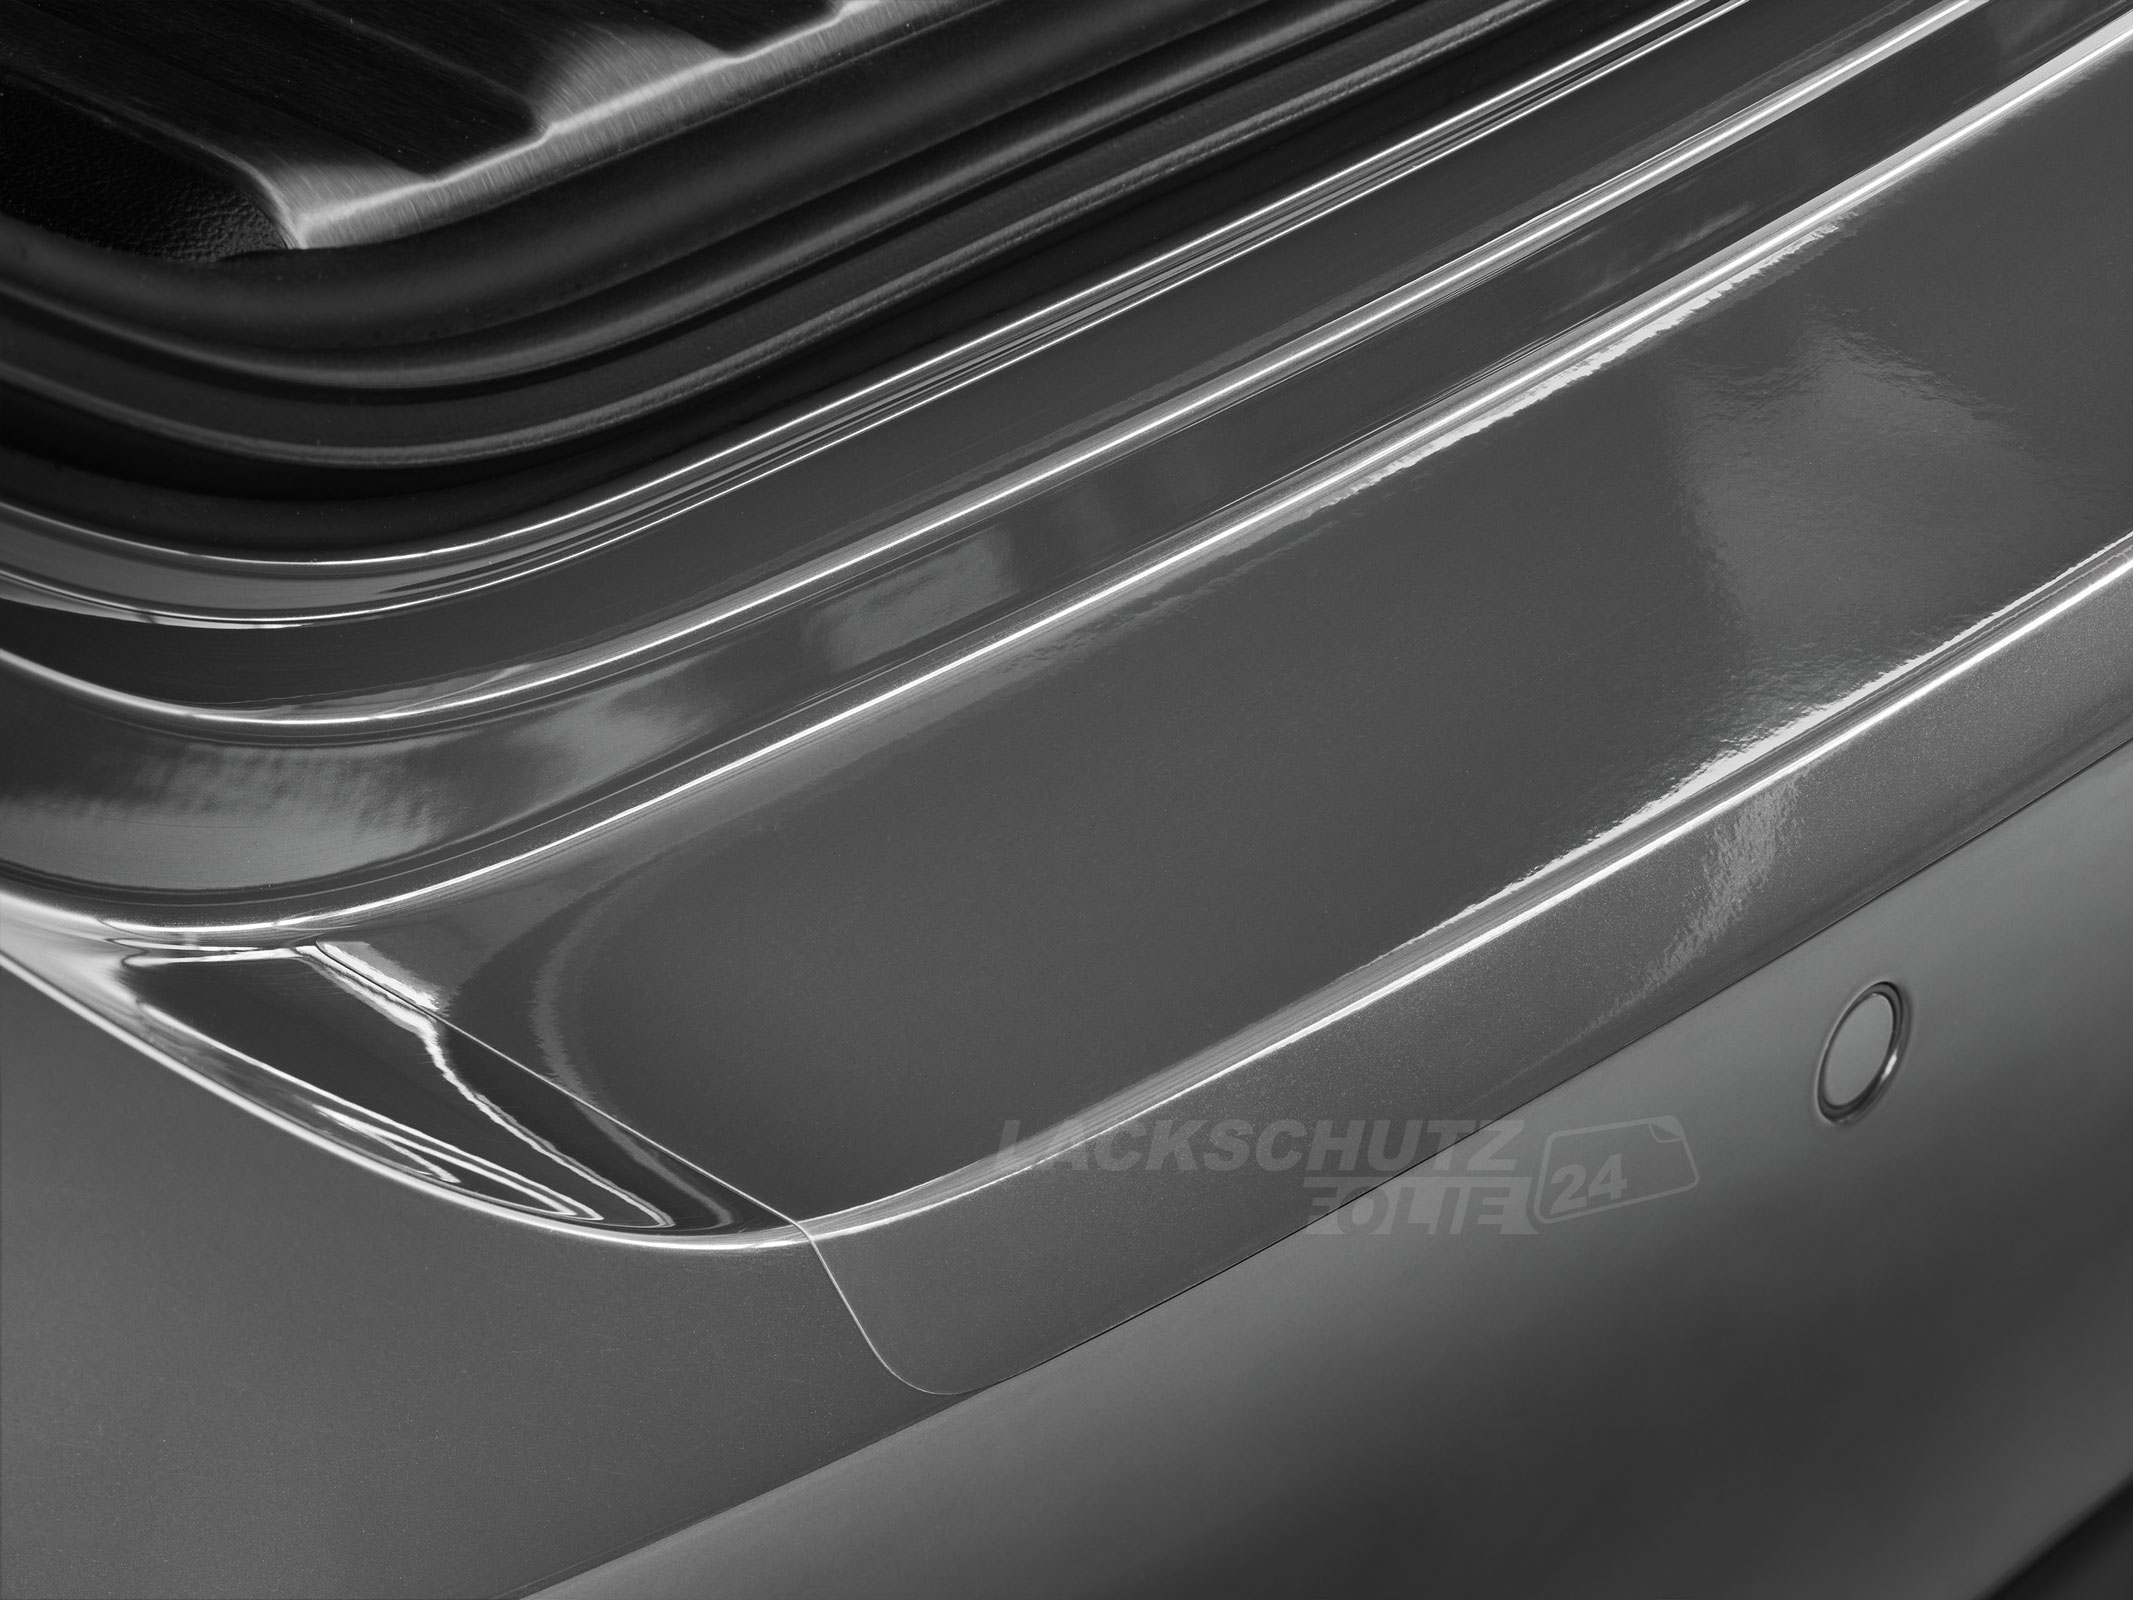 Ladekantenschutzfolie - Transparent Glatt Hochglänzend 240 µm stark für Mercedes-Benz A-Klasse Typ W168, BJ 1997-2004